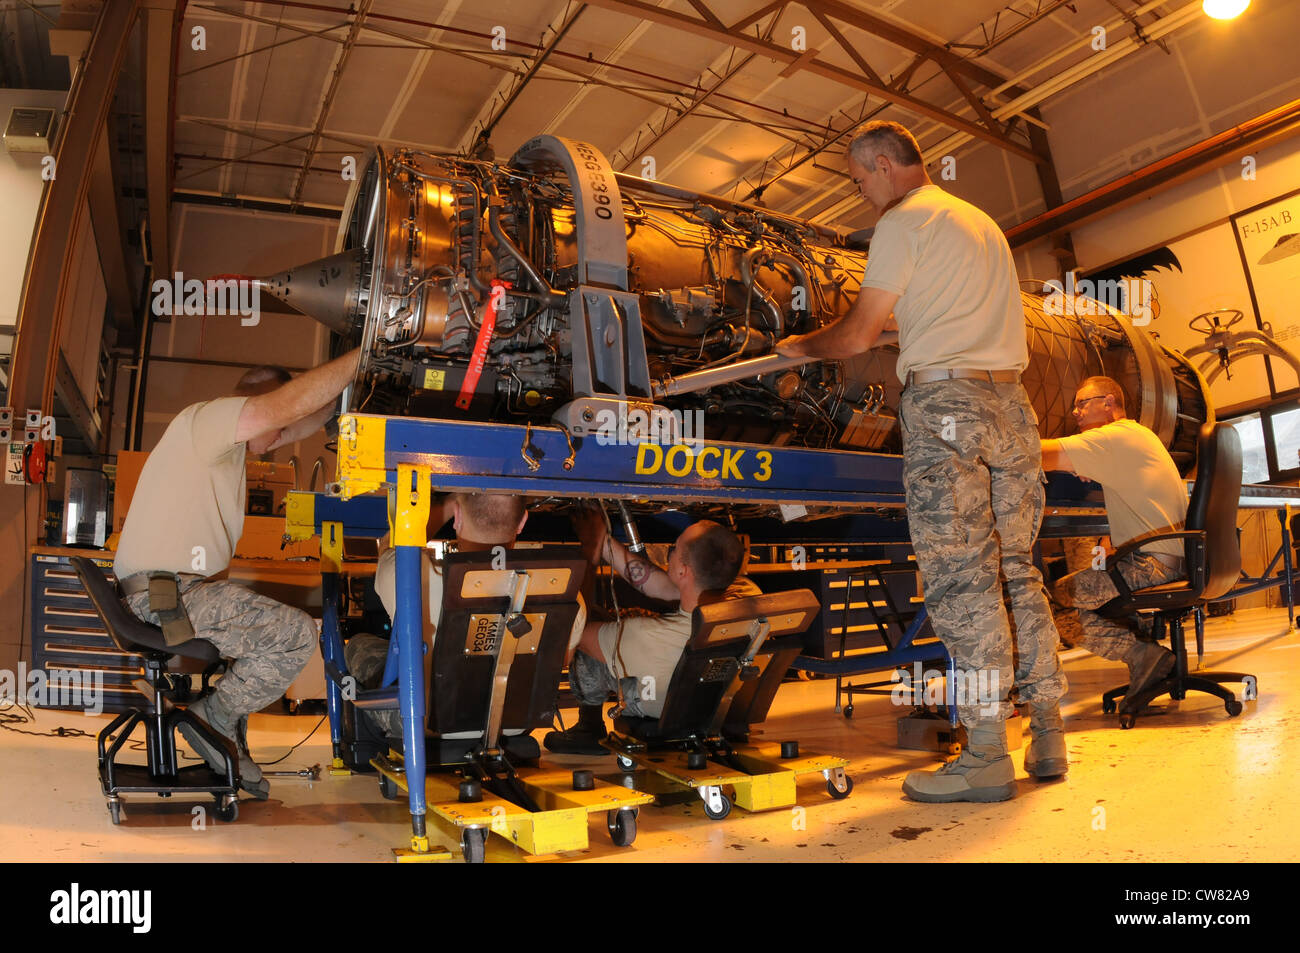 Les membres de l'atelier de propulsion de la Garde nationale aérienne, 173e aile de chasseurs, effectuent des tâches d'entretien, y compris l'inspection du noyau d'un moteur F-15 pour détecter les imperfections à l'aide d'une caméra à Kingsley Field, en Ontario, le 15 août 2012. La caméra d'endoscope utilisée à l'intérieur du moteur permet de détecter et de documenter une déchirure dans le noyau du moteur. Banque D'Images